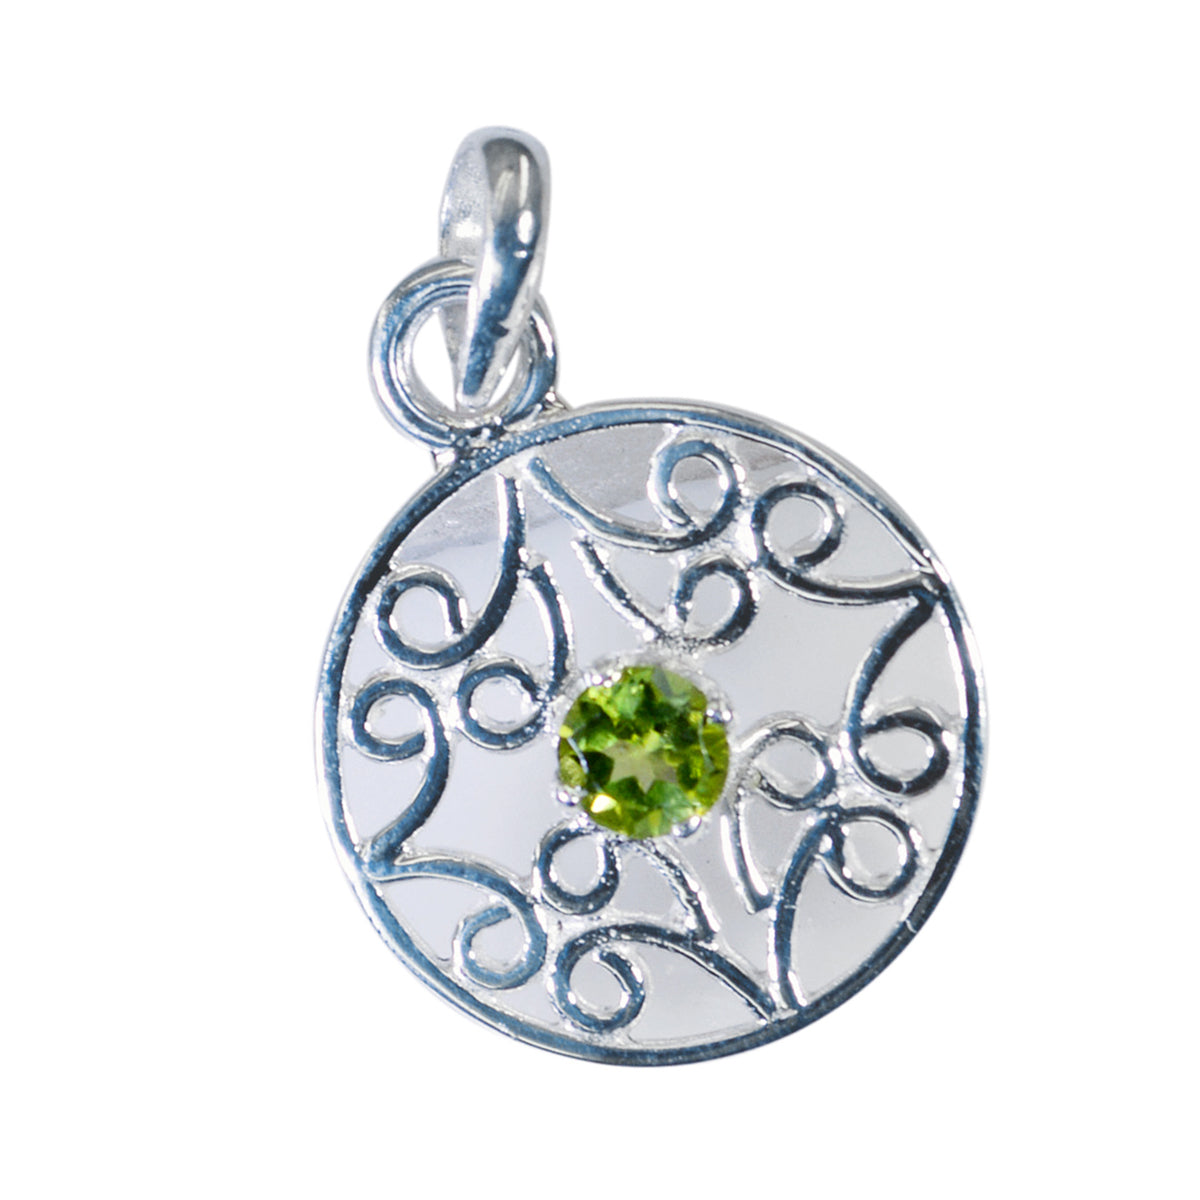 Riyo spunky gems colgante redondo de plata con peridoto verde facetado, regalo para esposa